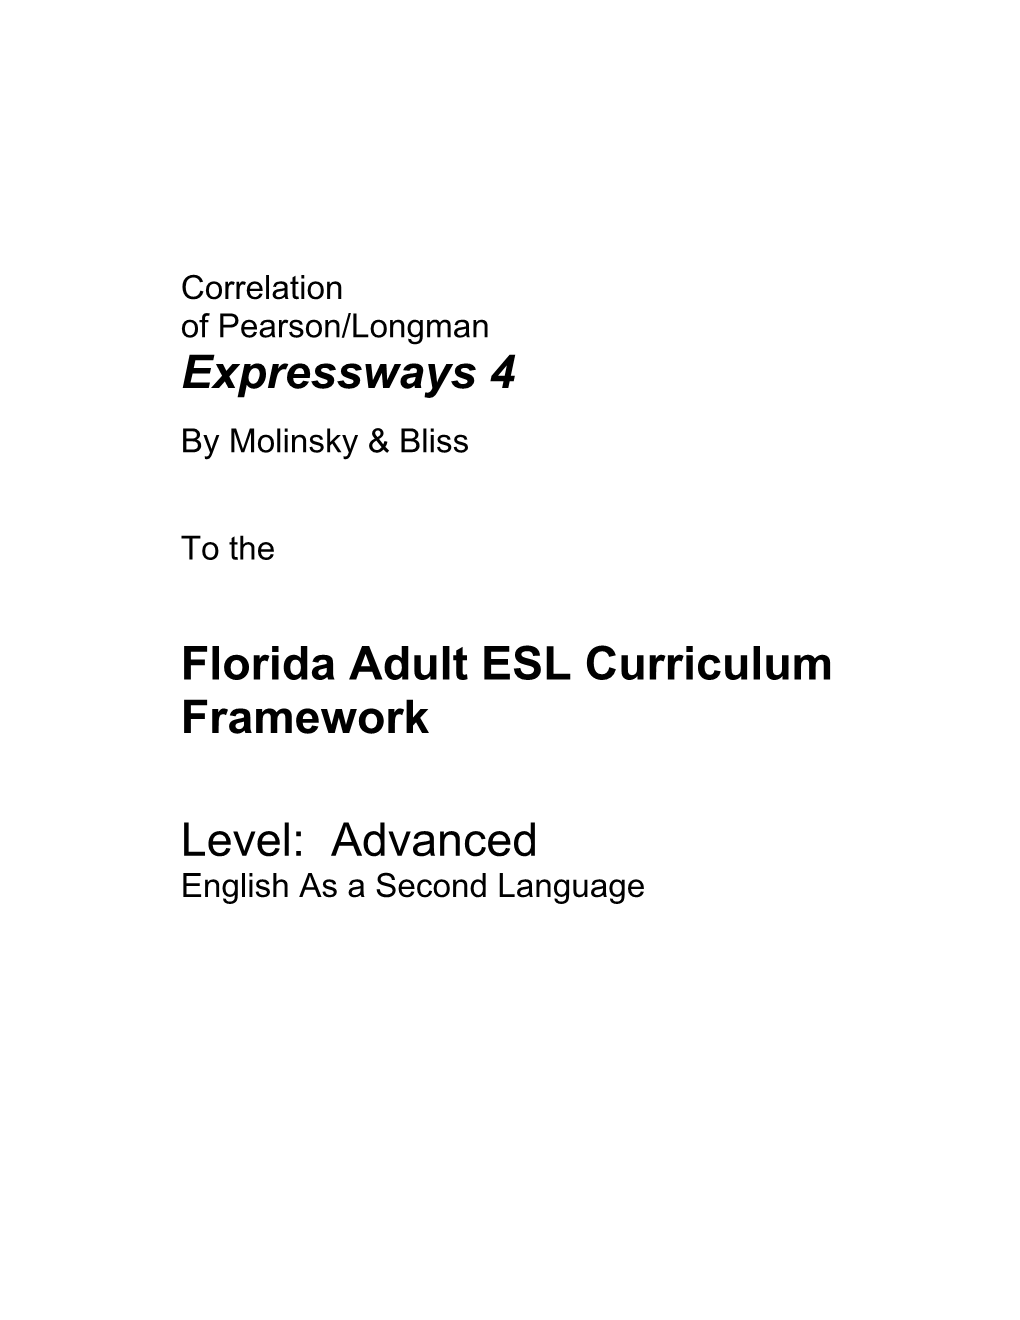 Florida Adult ESL Curriculum Framework